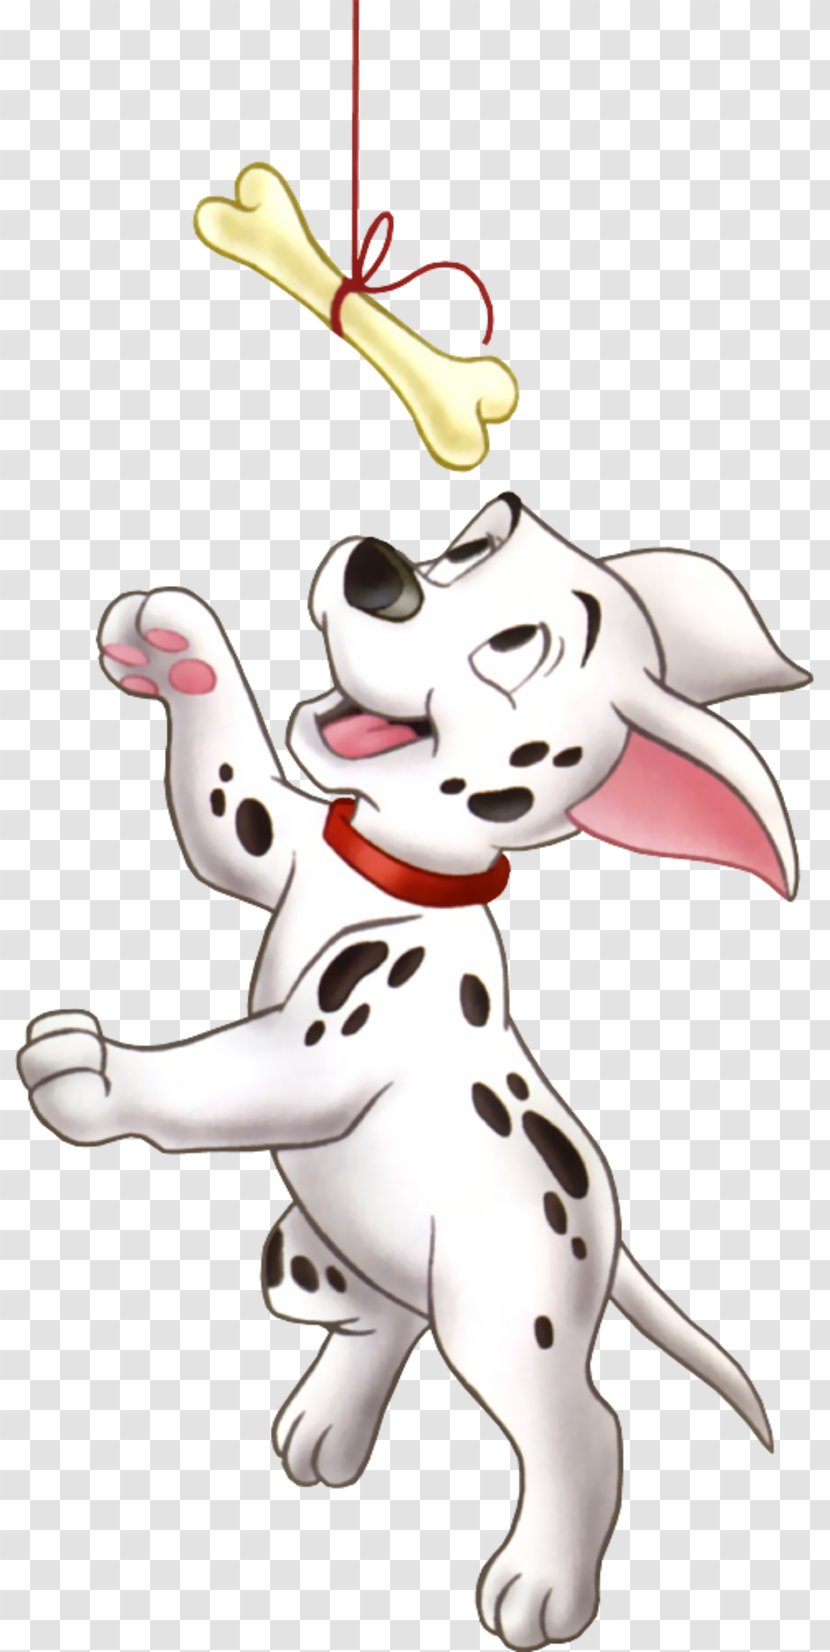 Dalmatian Dog Cruella De Vil The 101 Dalmatians Musical Puppy Clip Art - Cartoon Transparent PNG